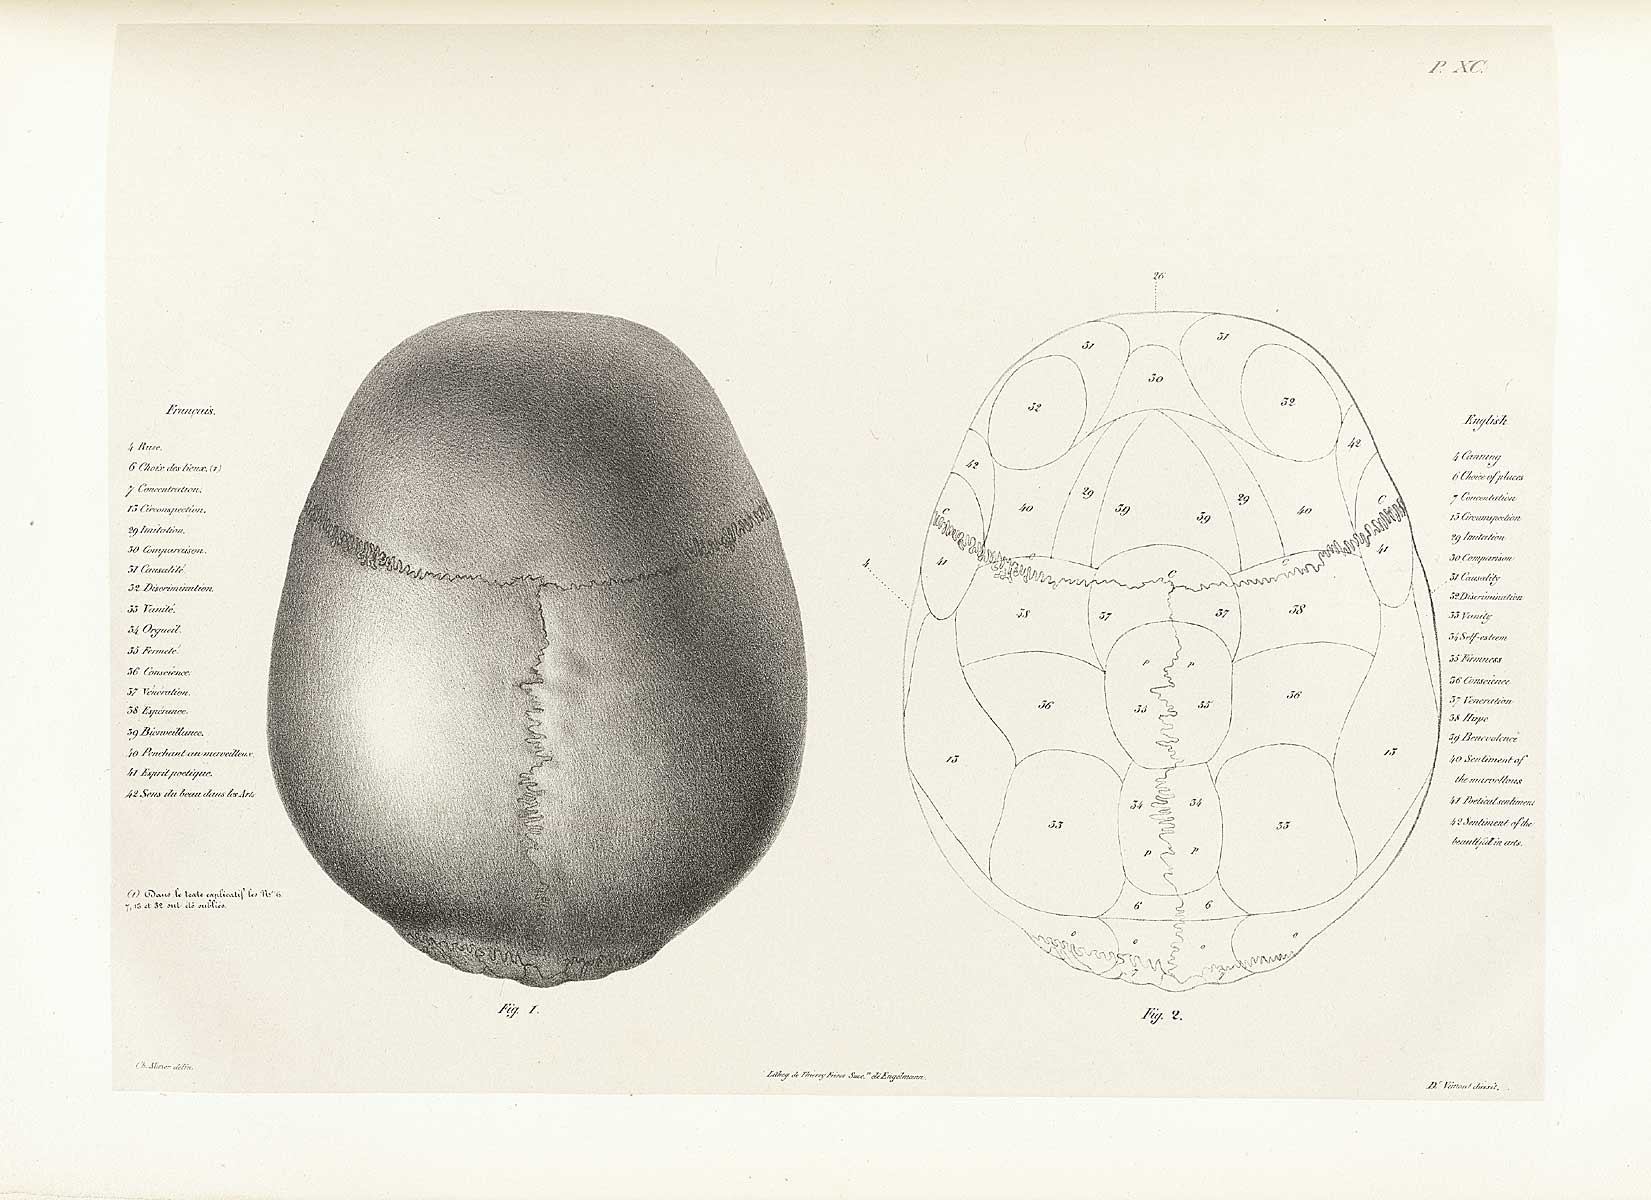 Table 90 of Joseph Vimont's Traité de phrénologie humaine et comparée, featuring the top view of two skulls.